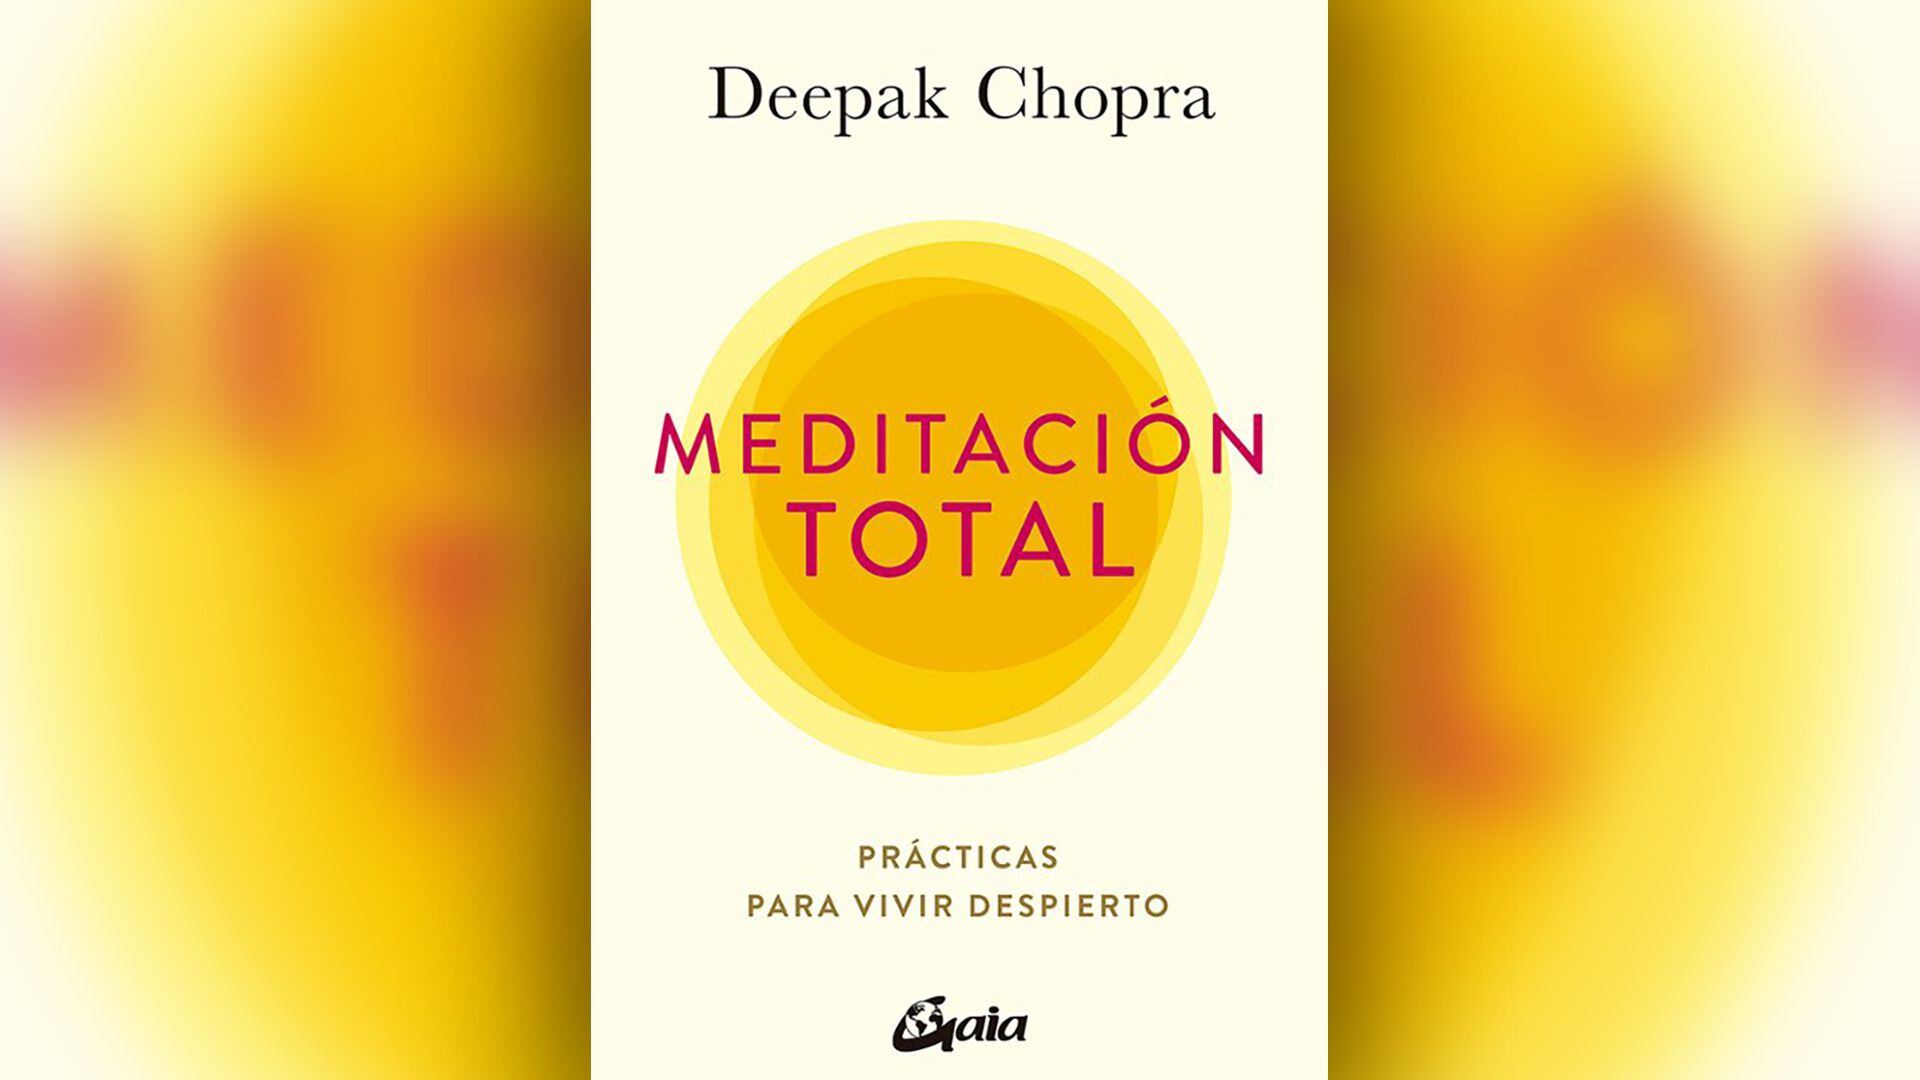 Portada del libro “Meditación total” de Deepak Chopra